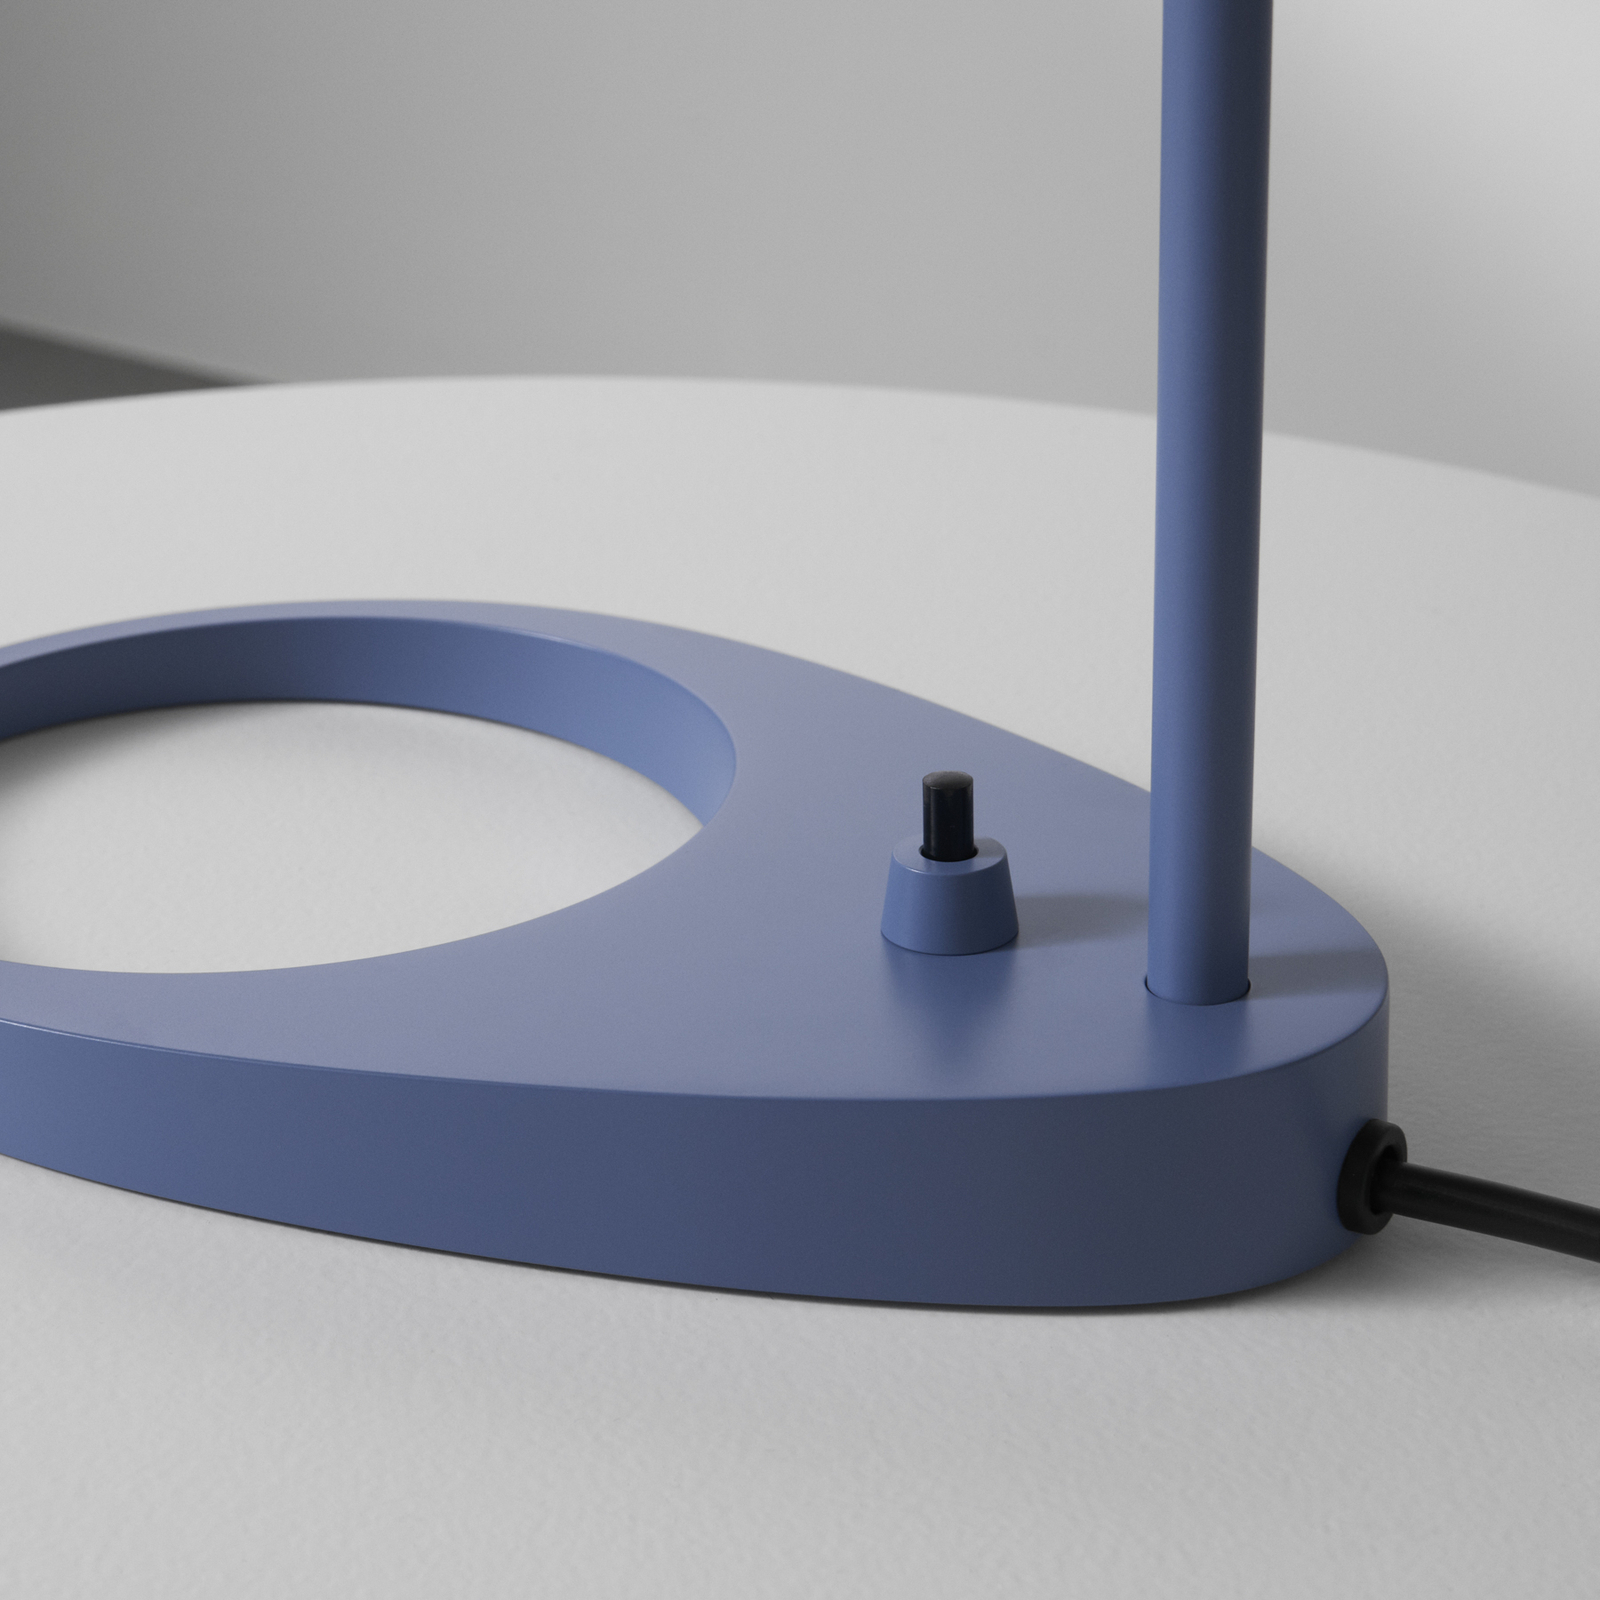 Louis Poulsen AJ dizájner asztali lámpa kék-szürke